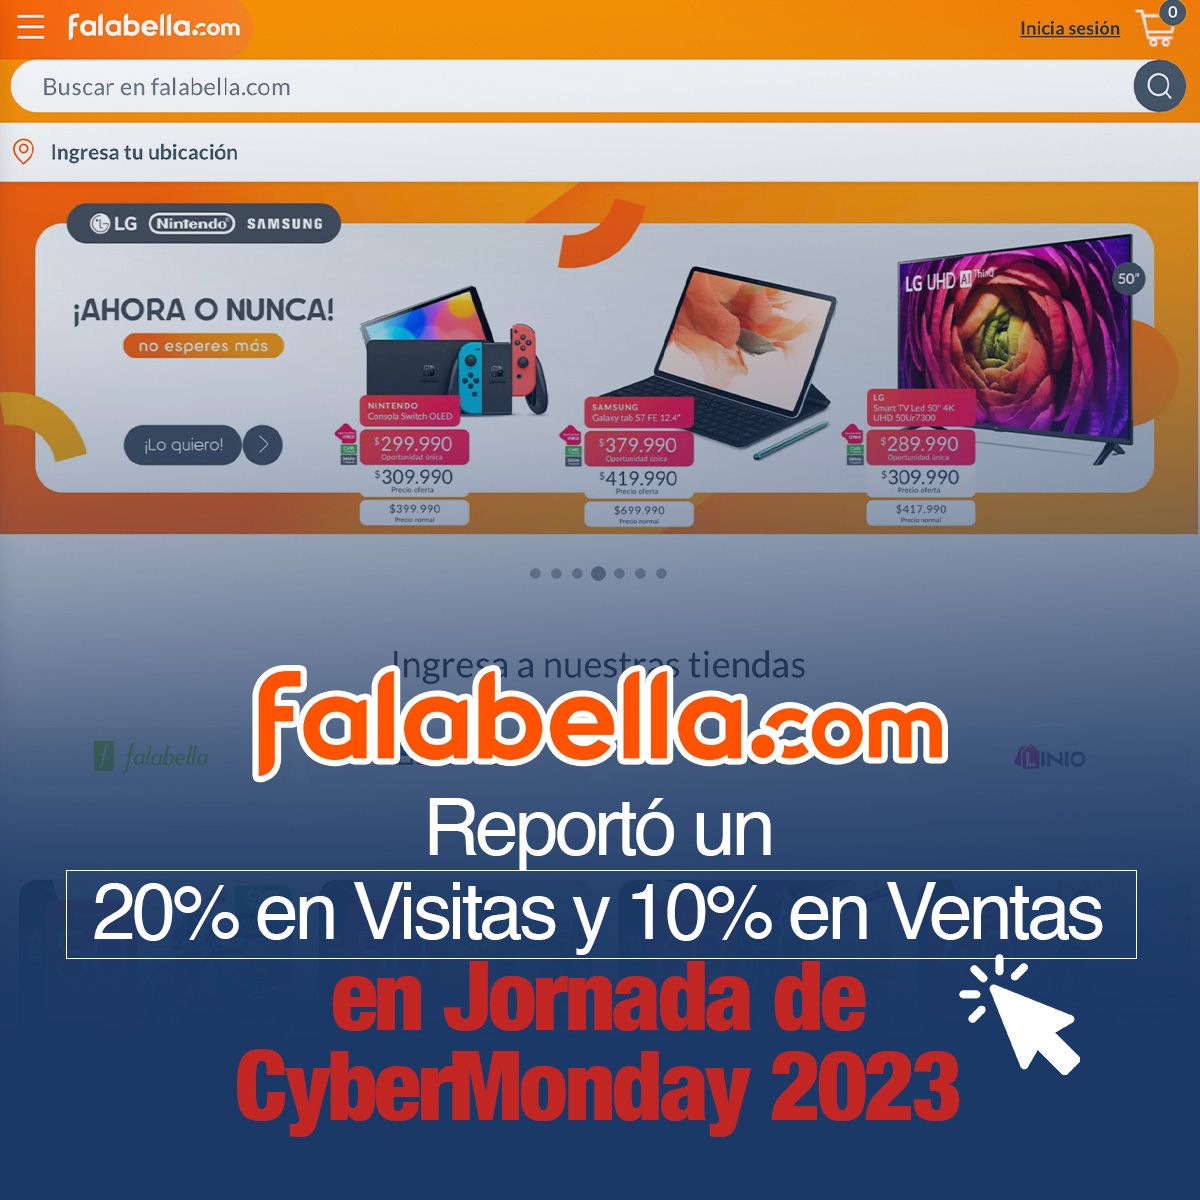 Falabella Reportó un 20% en Visitas y 10% en Ventas en Jornada de CyberMonday 2023